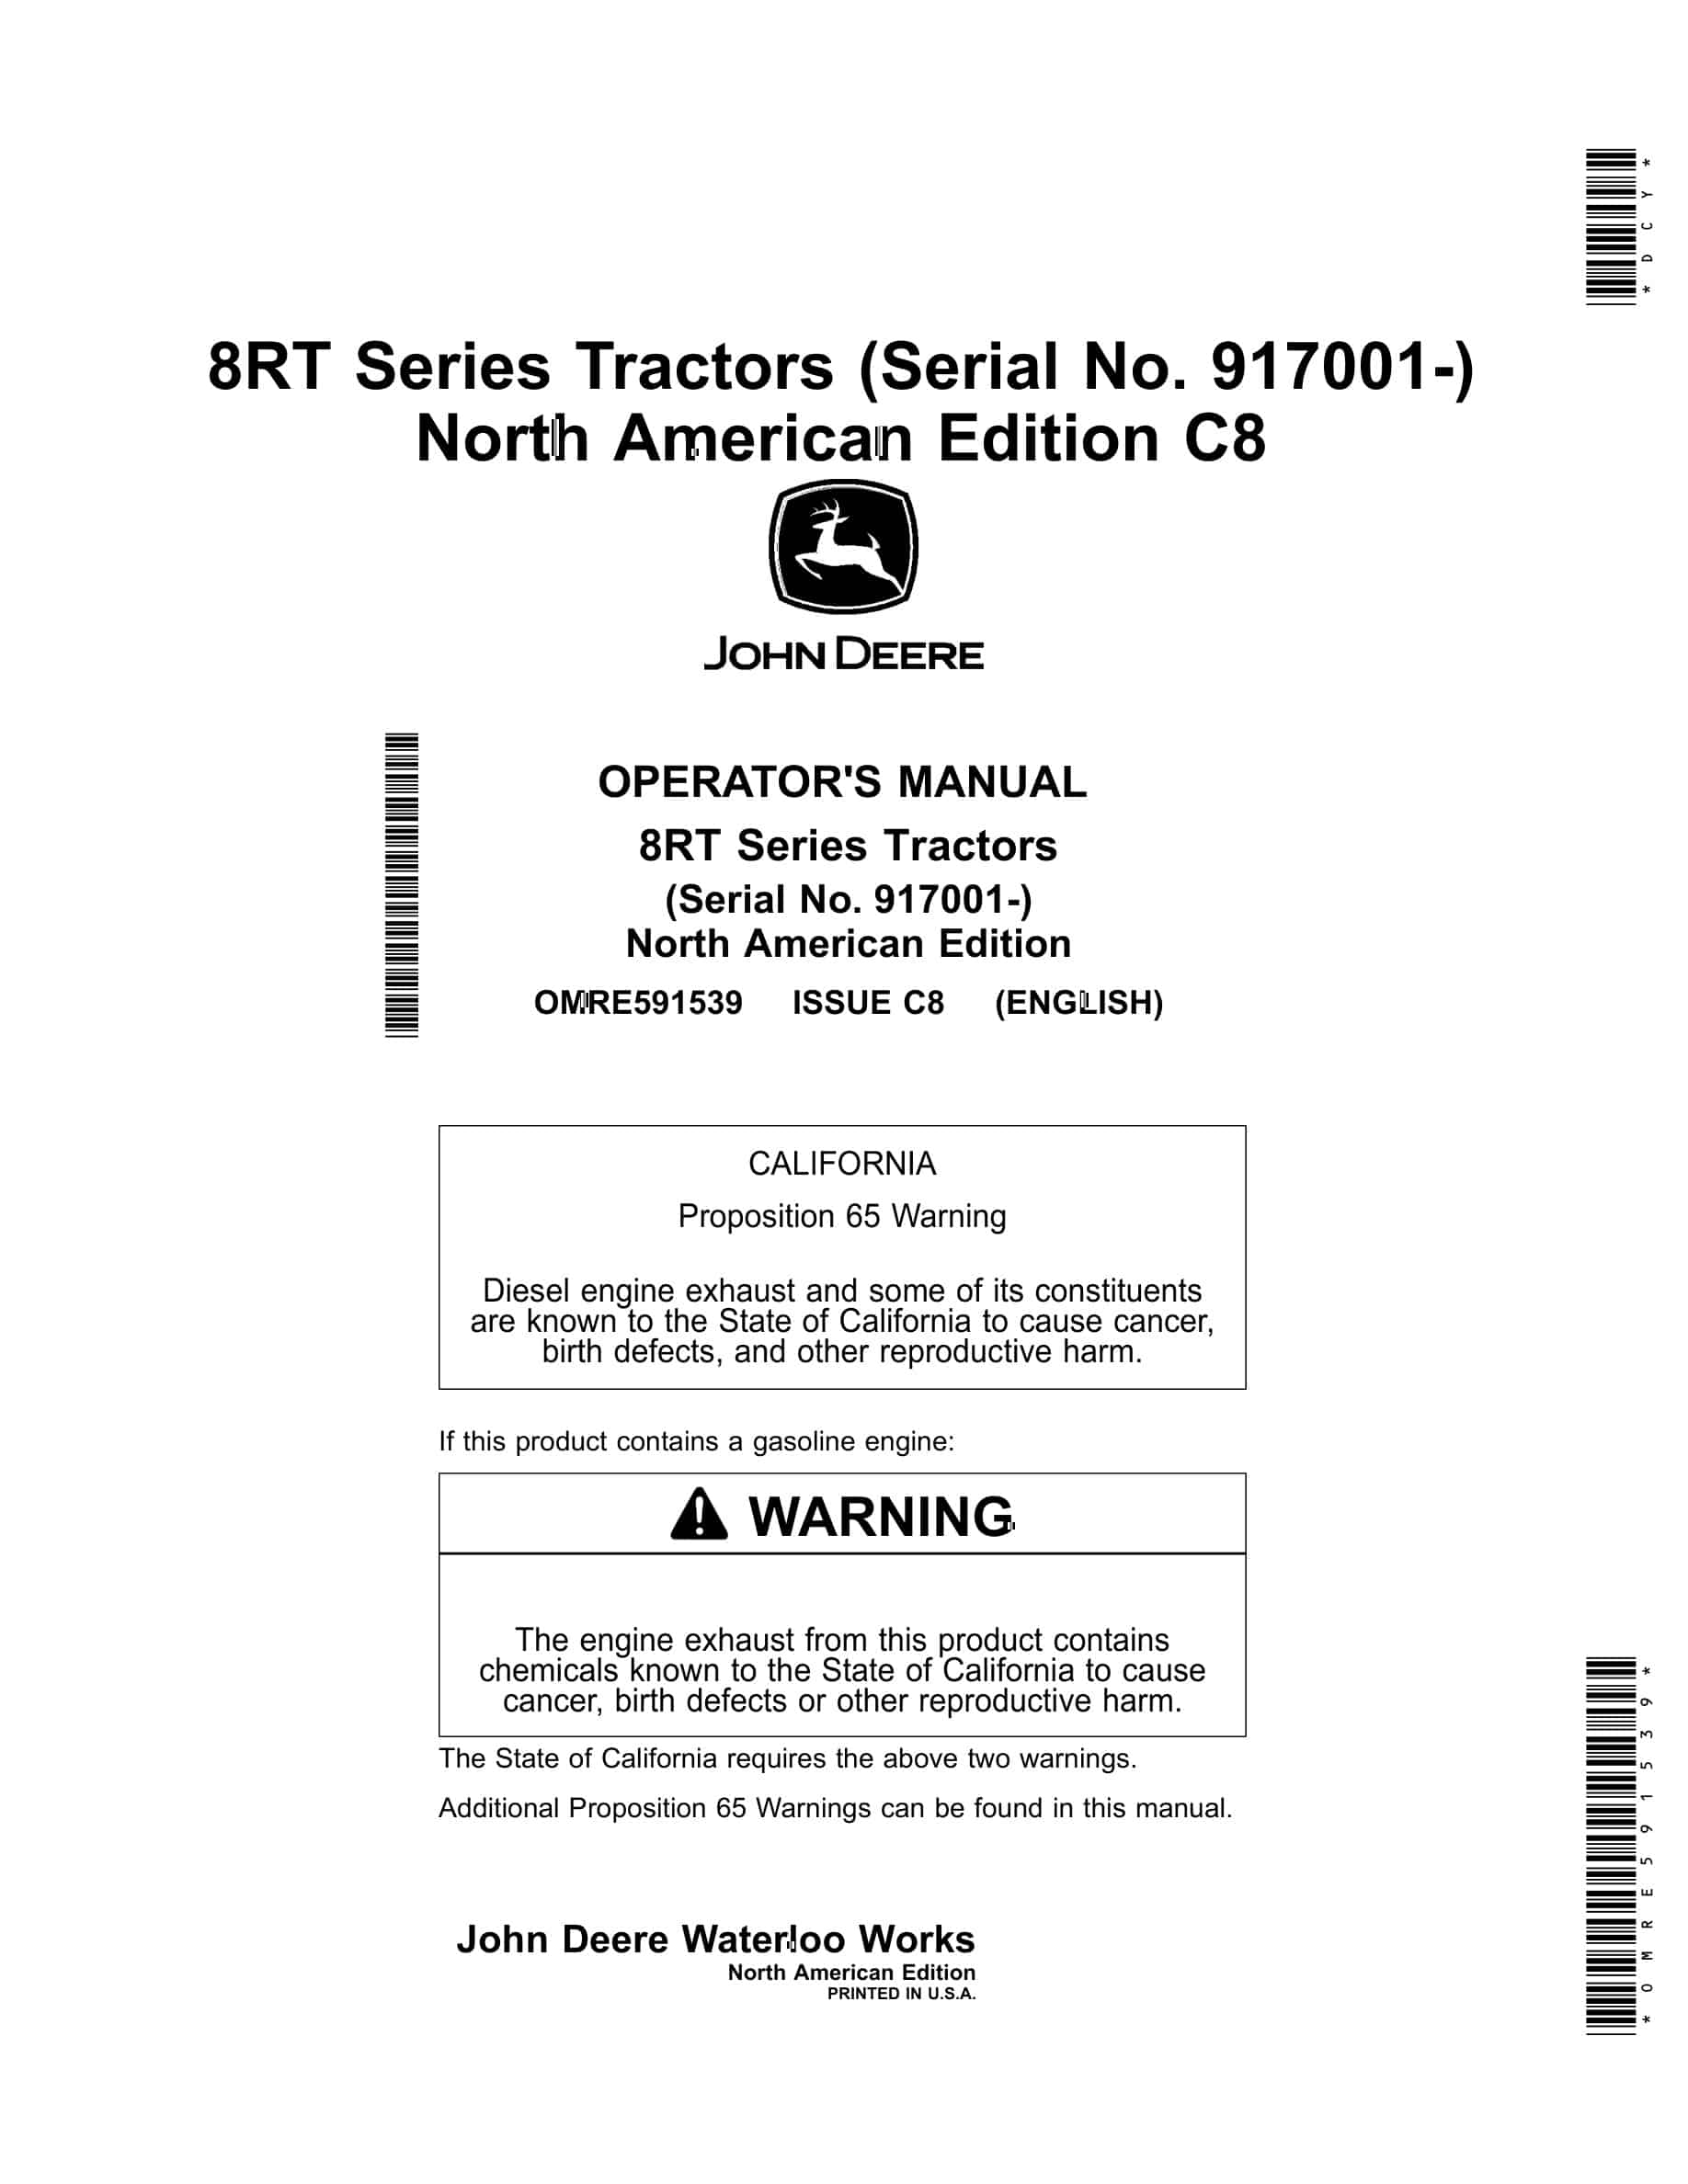 John Deere 8RT Tractor Operator Manual OMRE591539-1